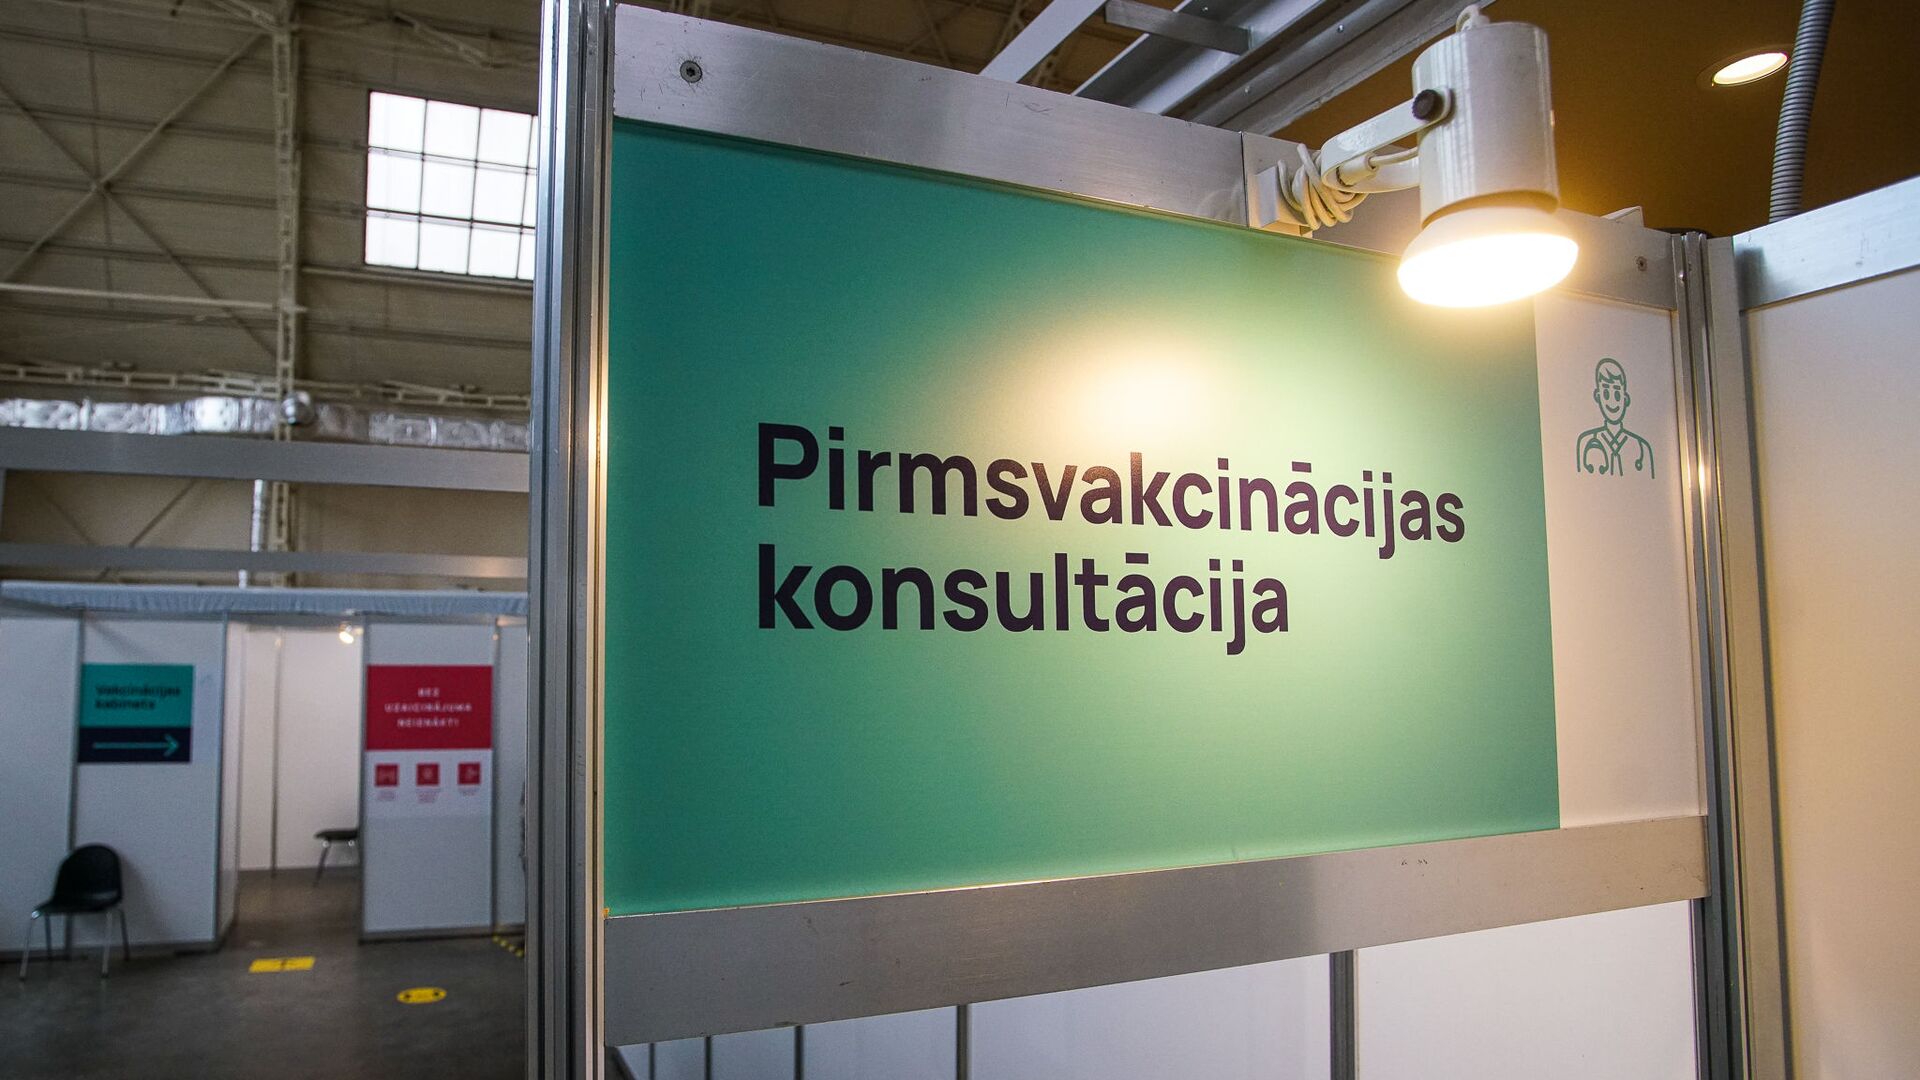 Центр вакцинации открылся в Гастрономическом павильоне Центрального рынка в Риге - Sputnik Латвия, 1920, 31.08.2021